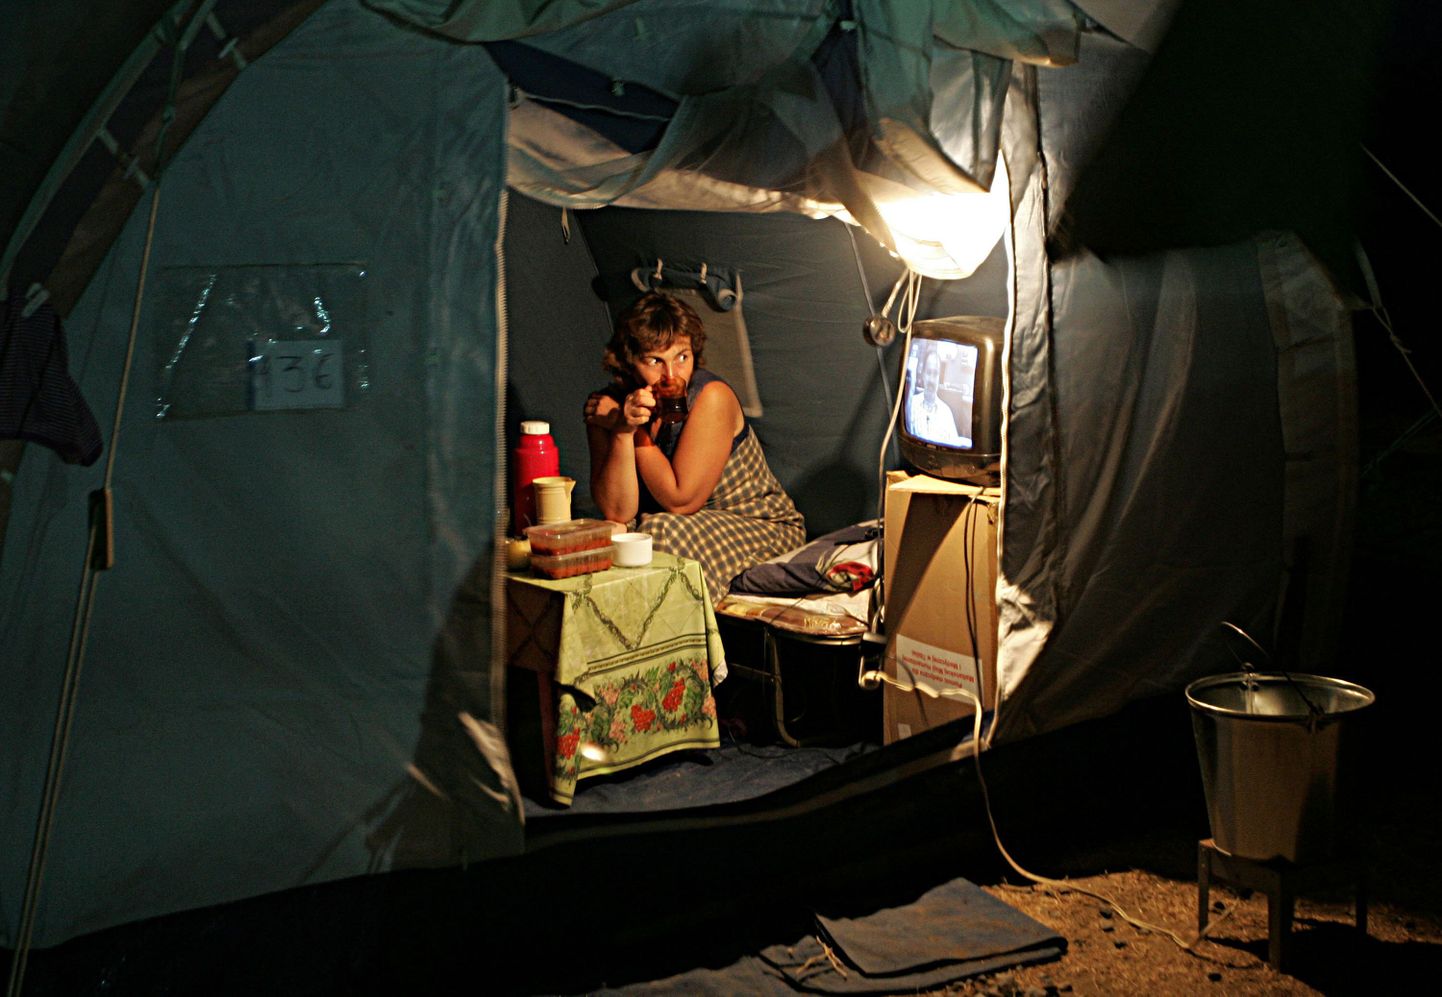 Gori lähistel asuva põgenikelaagri elanik. Pilt on tehtud 14. septembril.